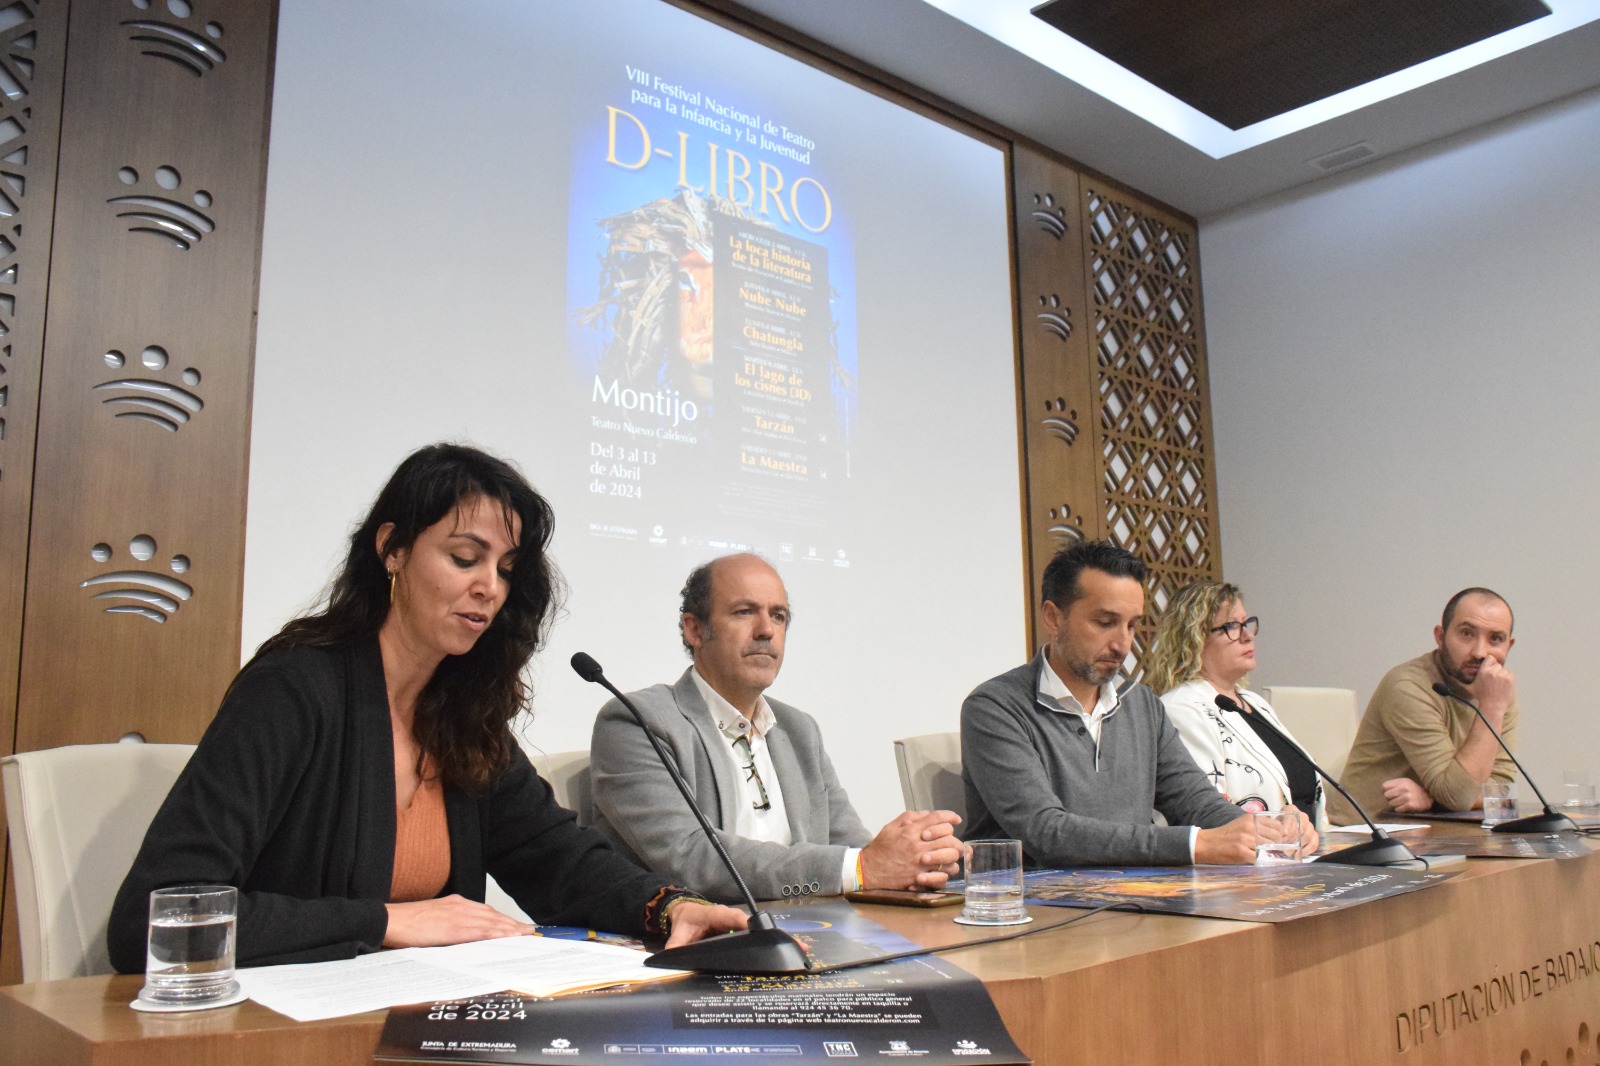 Image 2 of article La VIII edición del Festival de Teatro D-Libro de Montijo ofrecerá seis obras del catálogo de la Red de Teatros de Extremadura